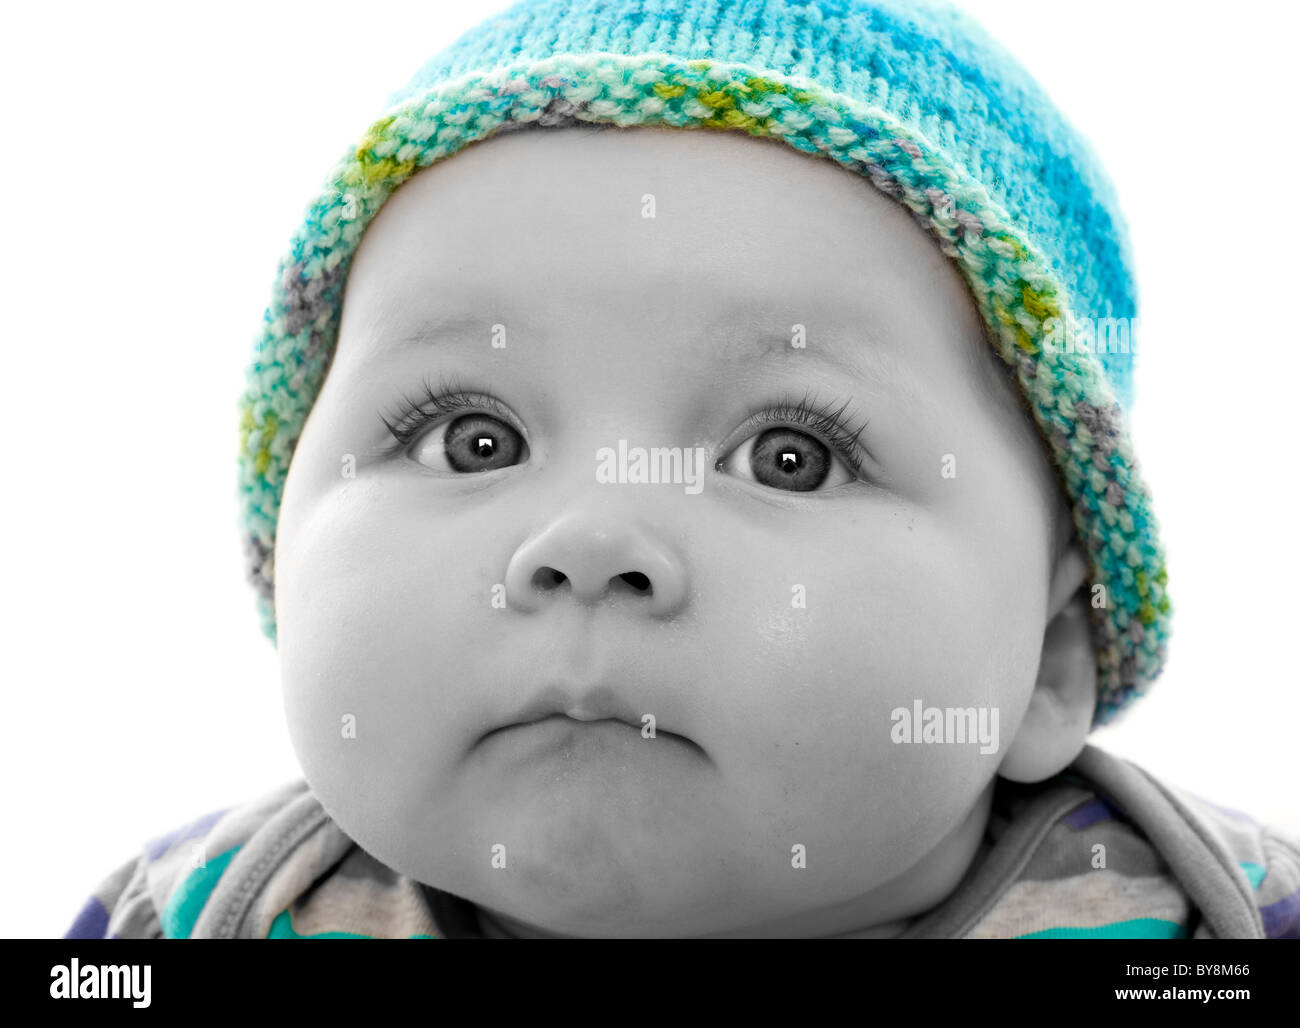 Fotografía de cabeza monocroma de color plano de un bebé con gorro de punto turquesa, sin perder de vista Foto de stock